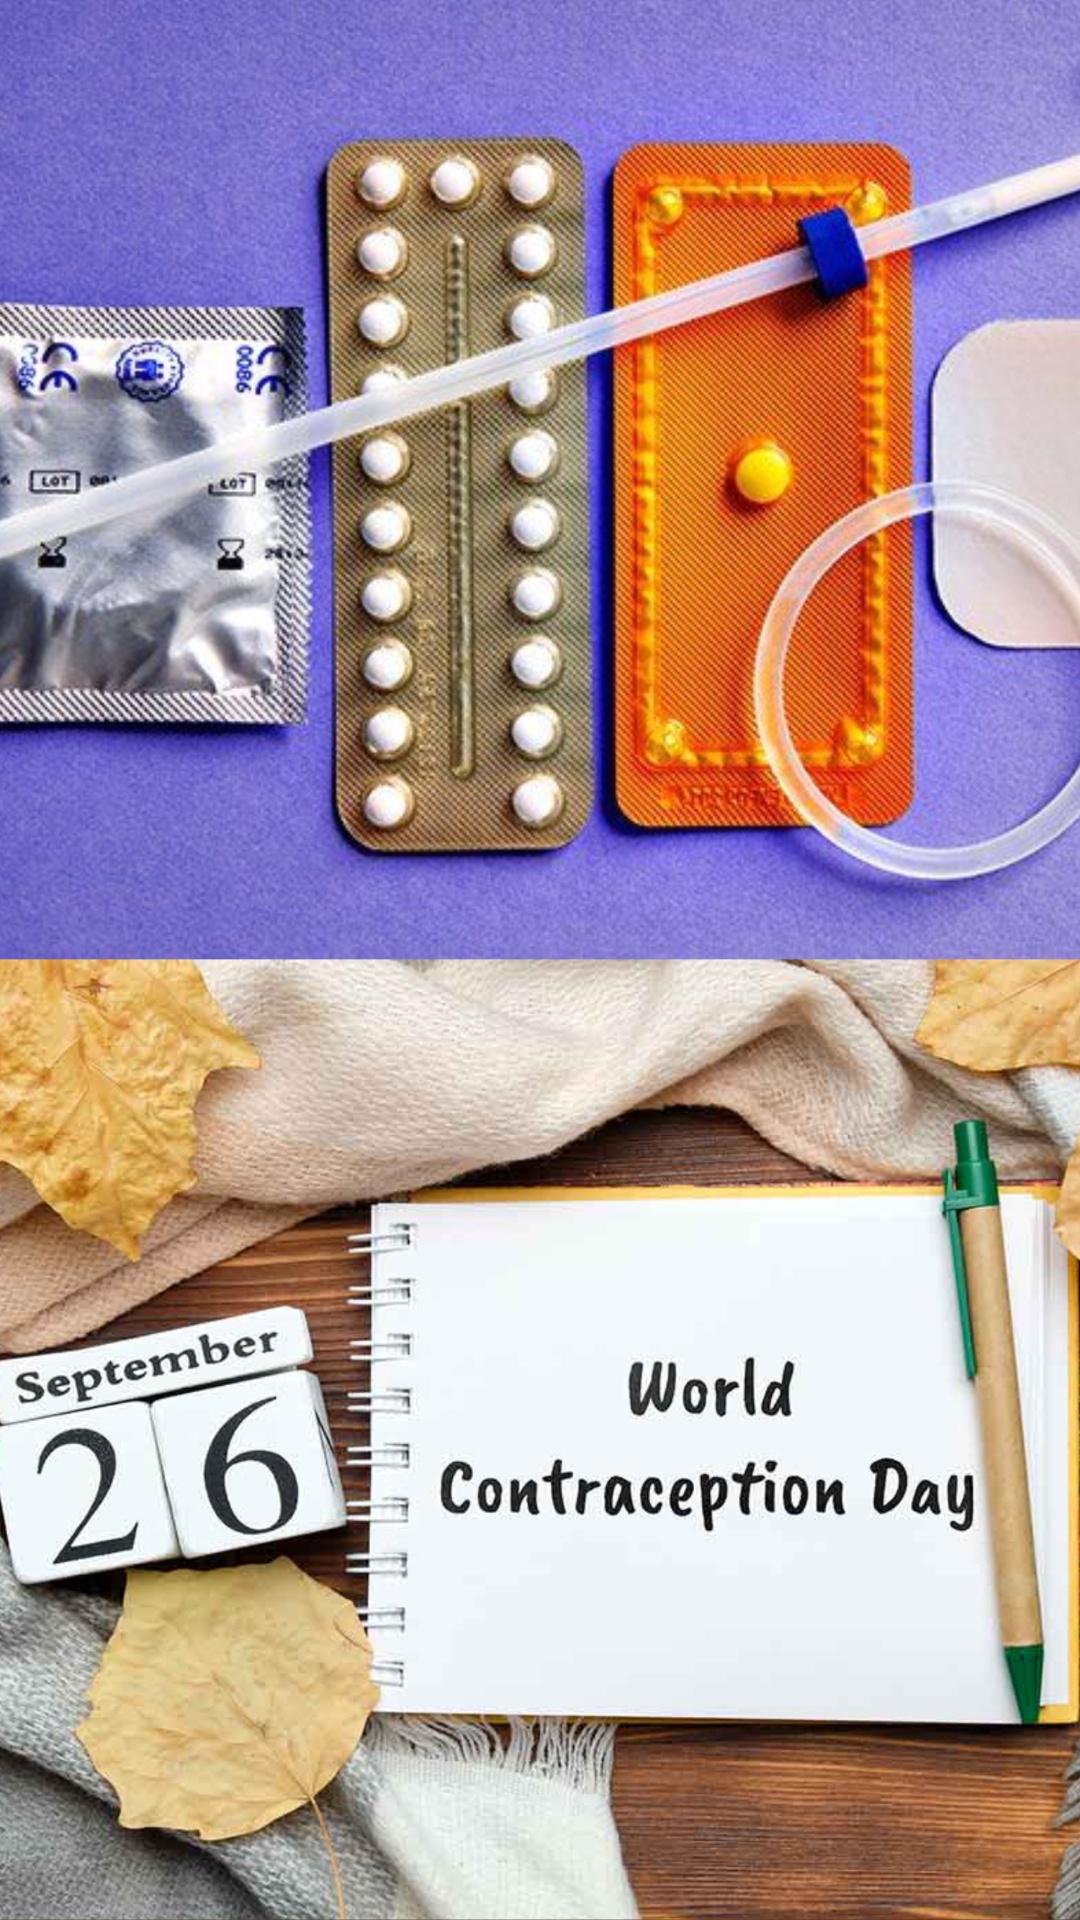 World contraception day: कॉन्ट्रासेप्शन क्या है? जानें इसके 5 प्रकार